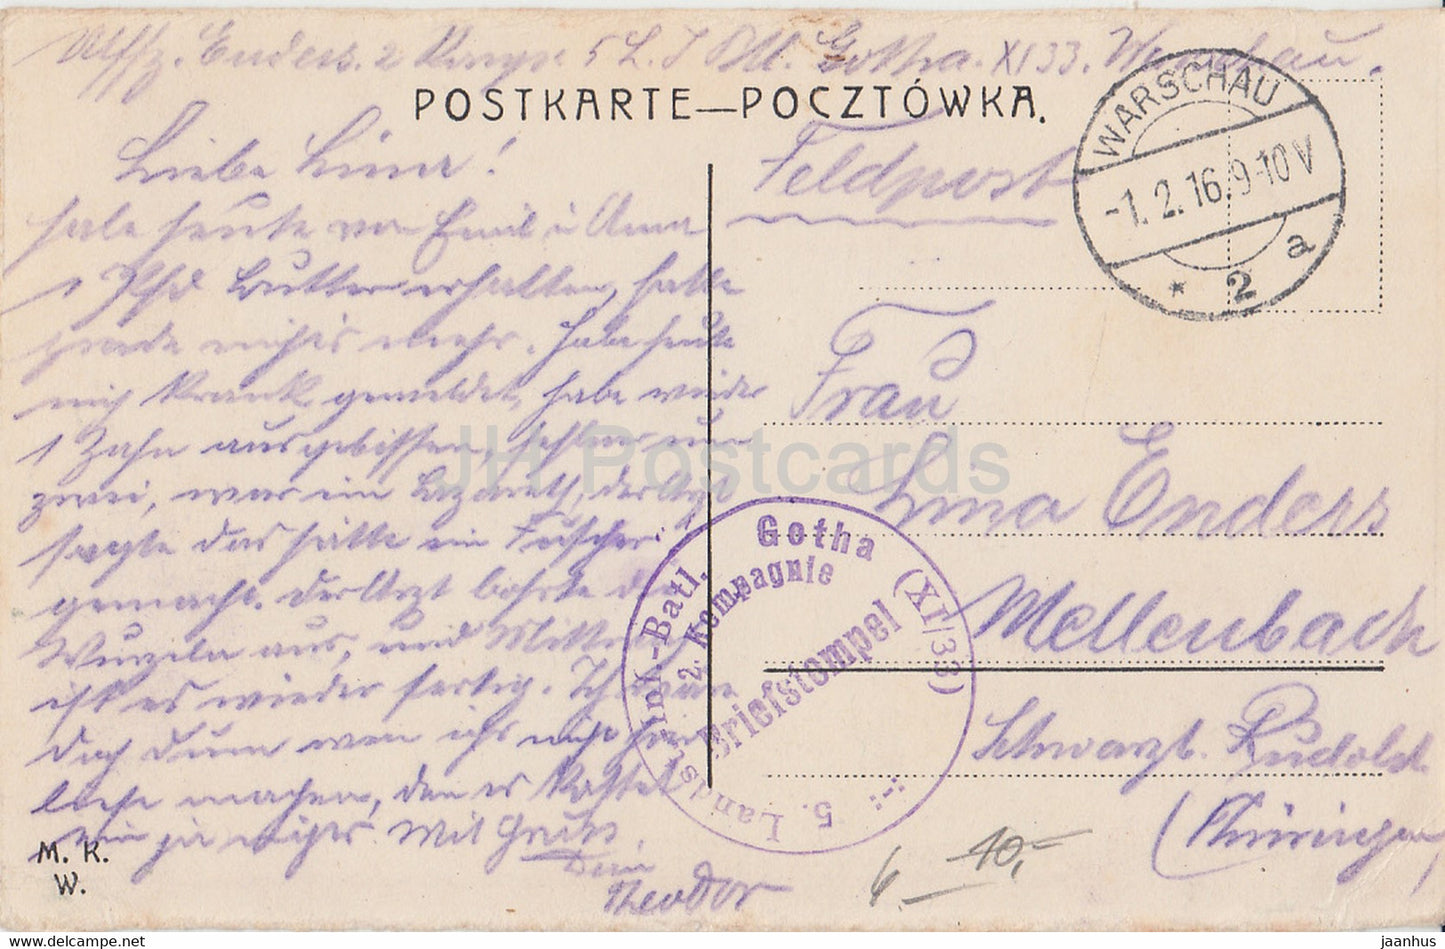 Warszawa - Warschau - Reichsbank - Bank Panstwa - Landstl Inf Batl Gotha Feldpost - alte Postkarte - 1916 - Polen - gebraucht